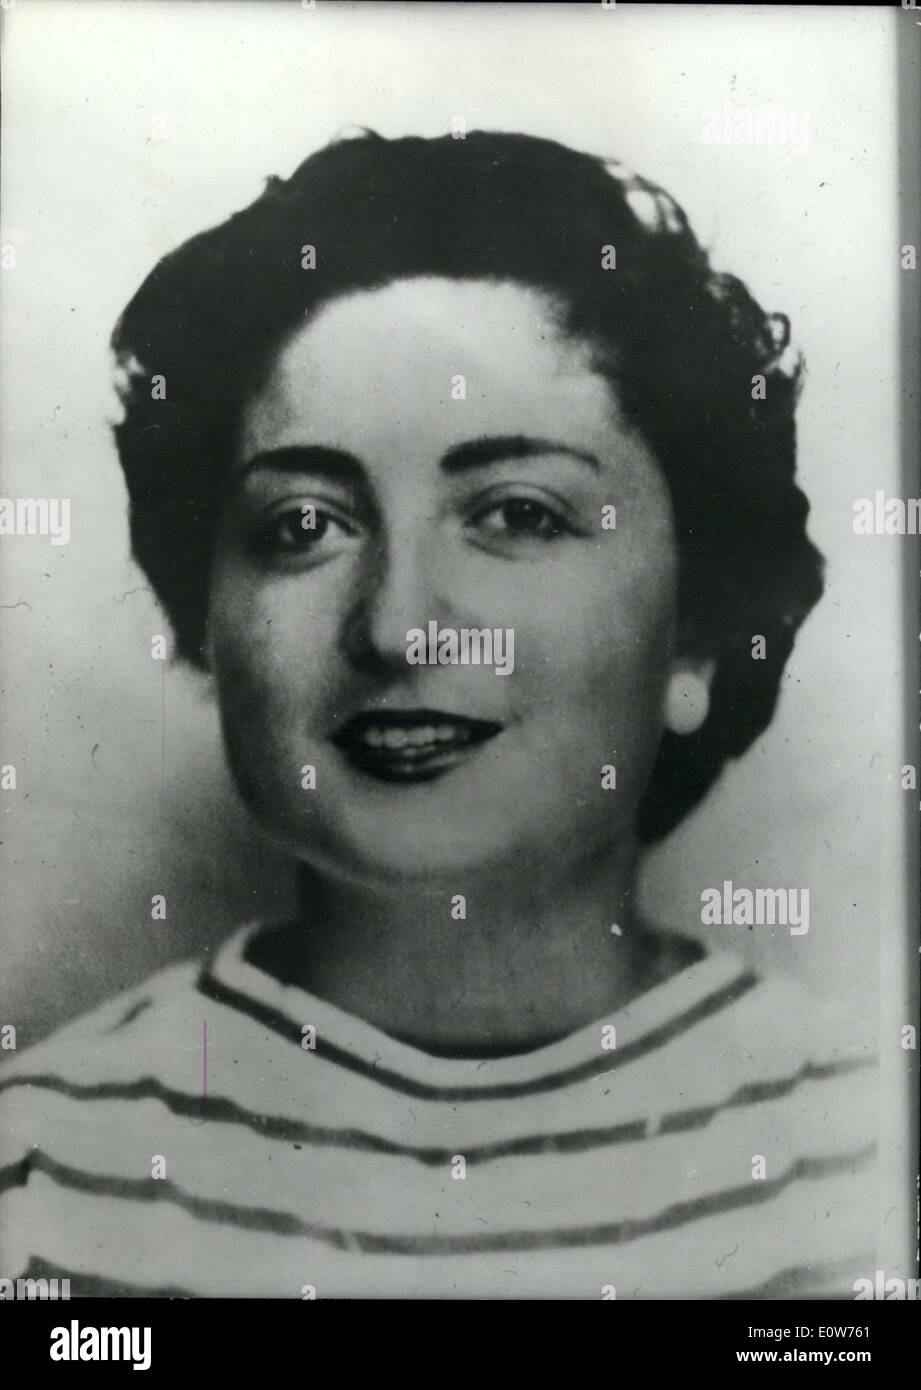 Septembre 05, 1961 - 500 millions de dollars de bijoux ont été volés par Sacha et trouvés à son domicile. Pictur Banque D'Images